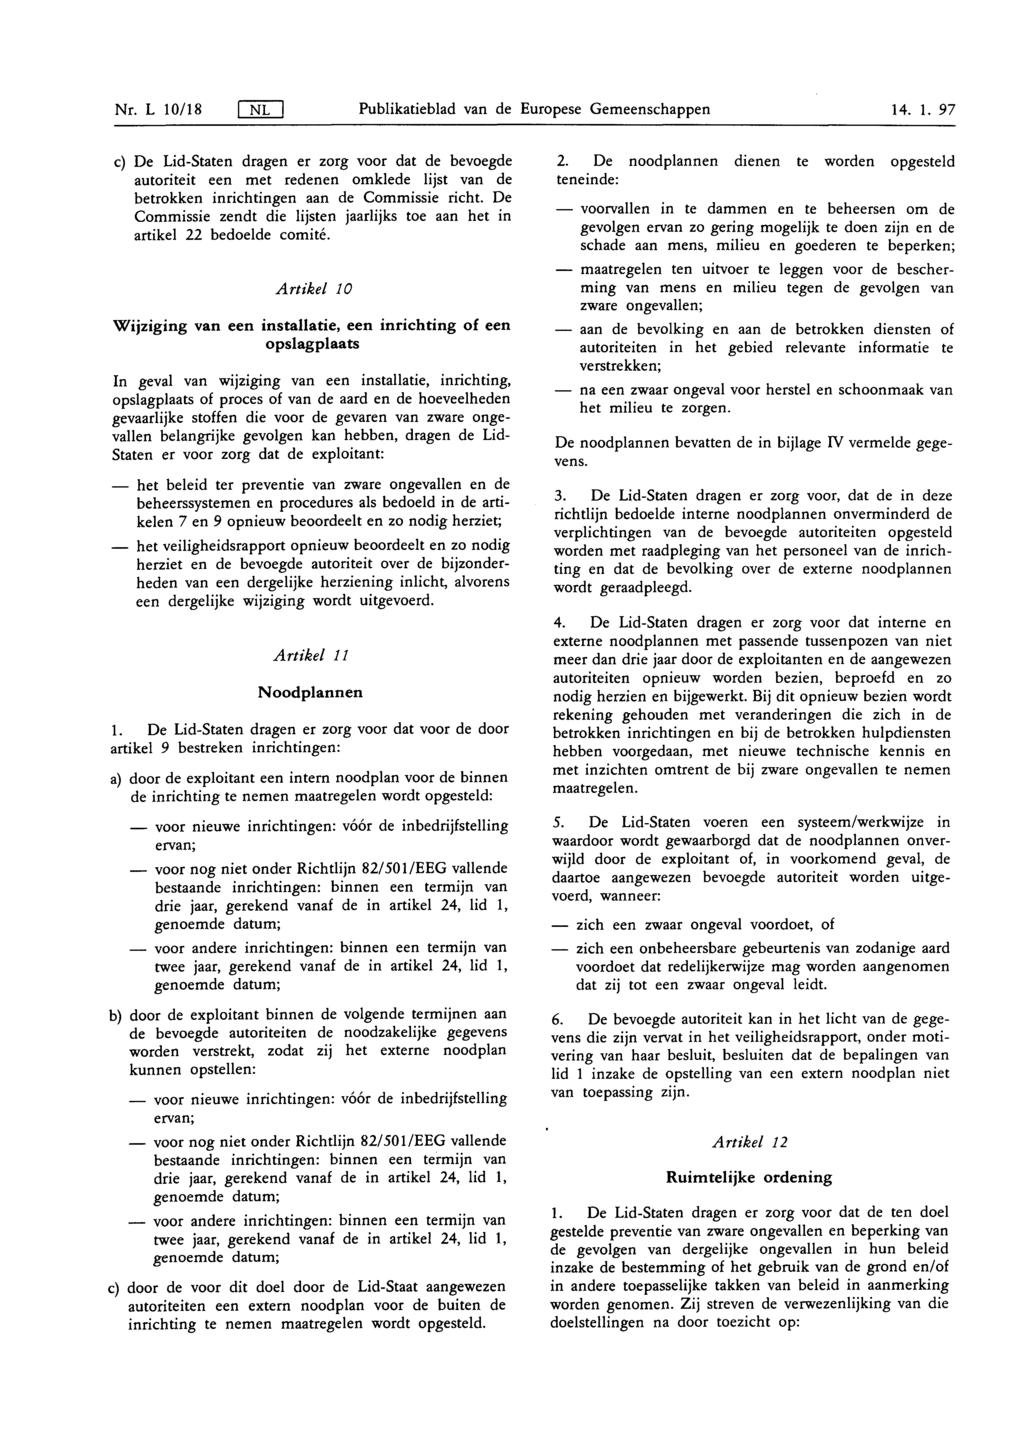 Nr. L 10/ 18 NL Publikatieblad van de Europese Gemeenschappen 14. 1. 97 c) De Lid-Staten dragen er zorg voor dat de bevoegde autoriteit een met redenen omklede lijst van de betrokken inrichtingen aan de Commissie richt.